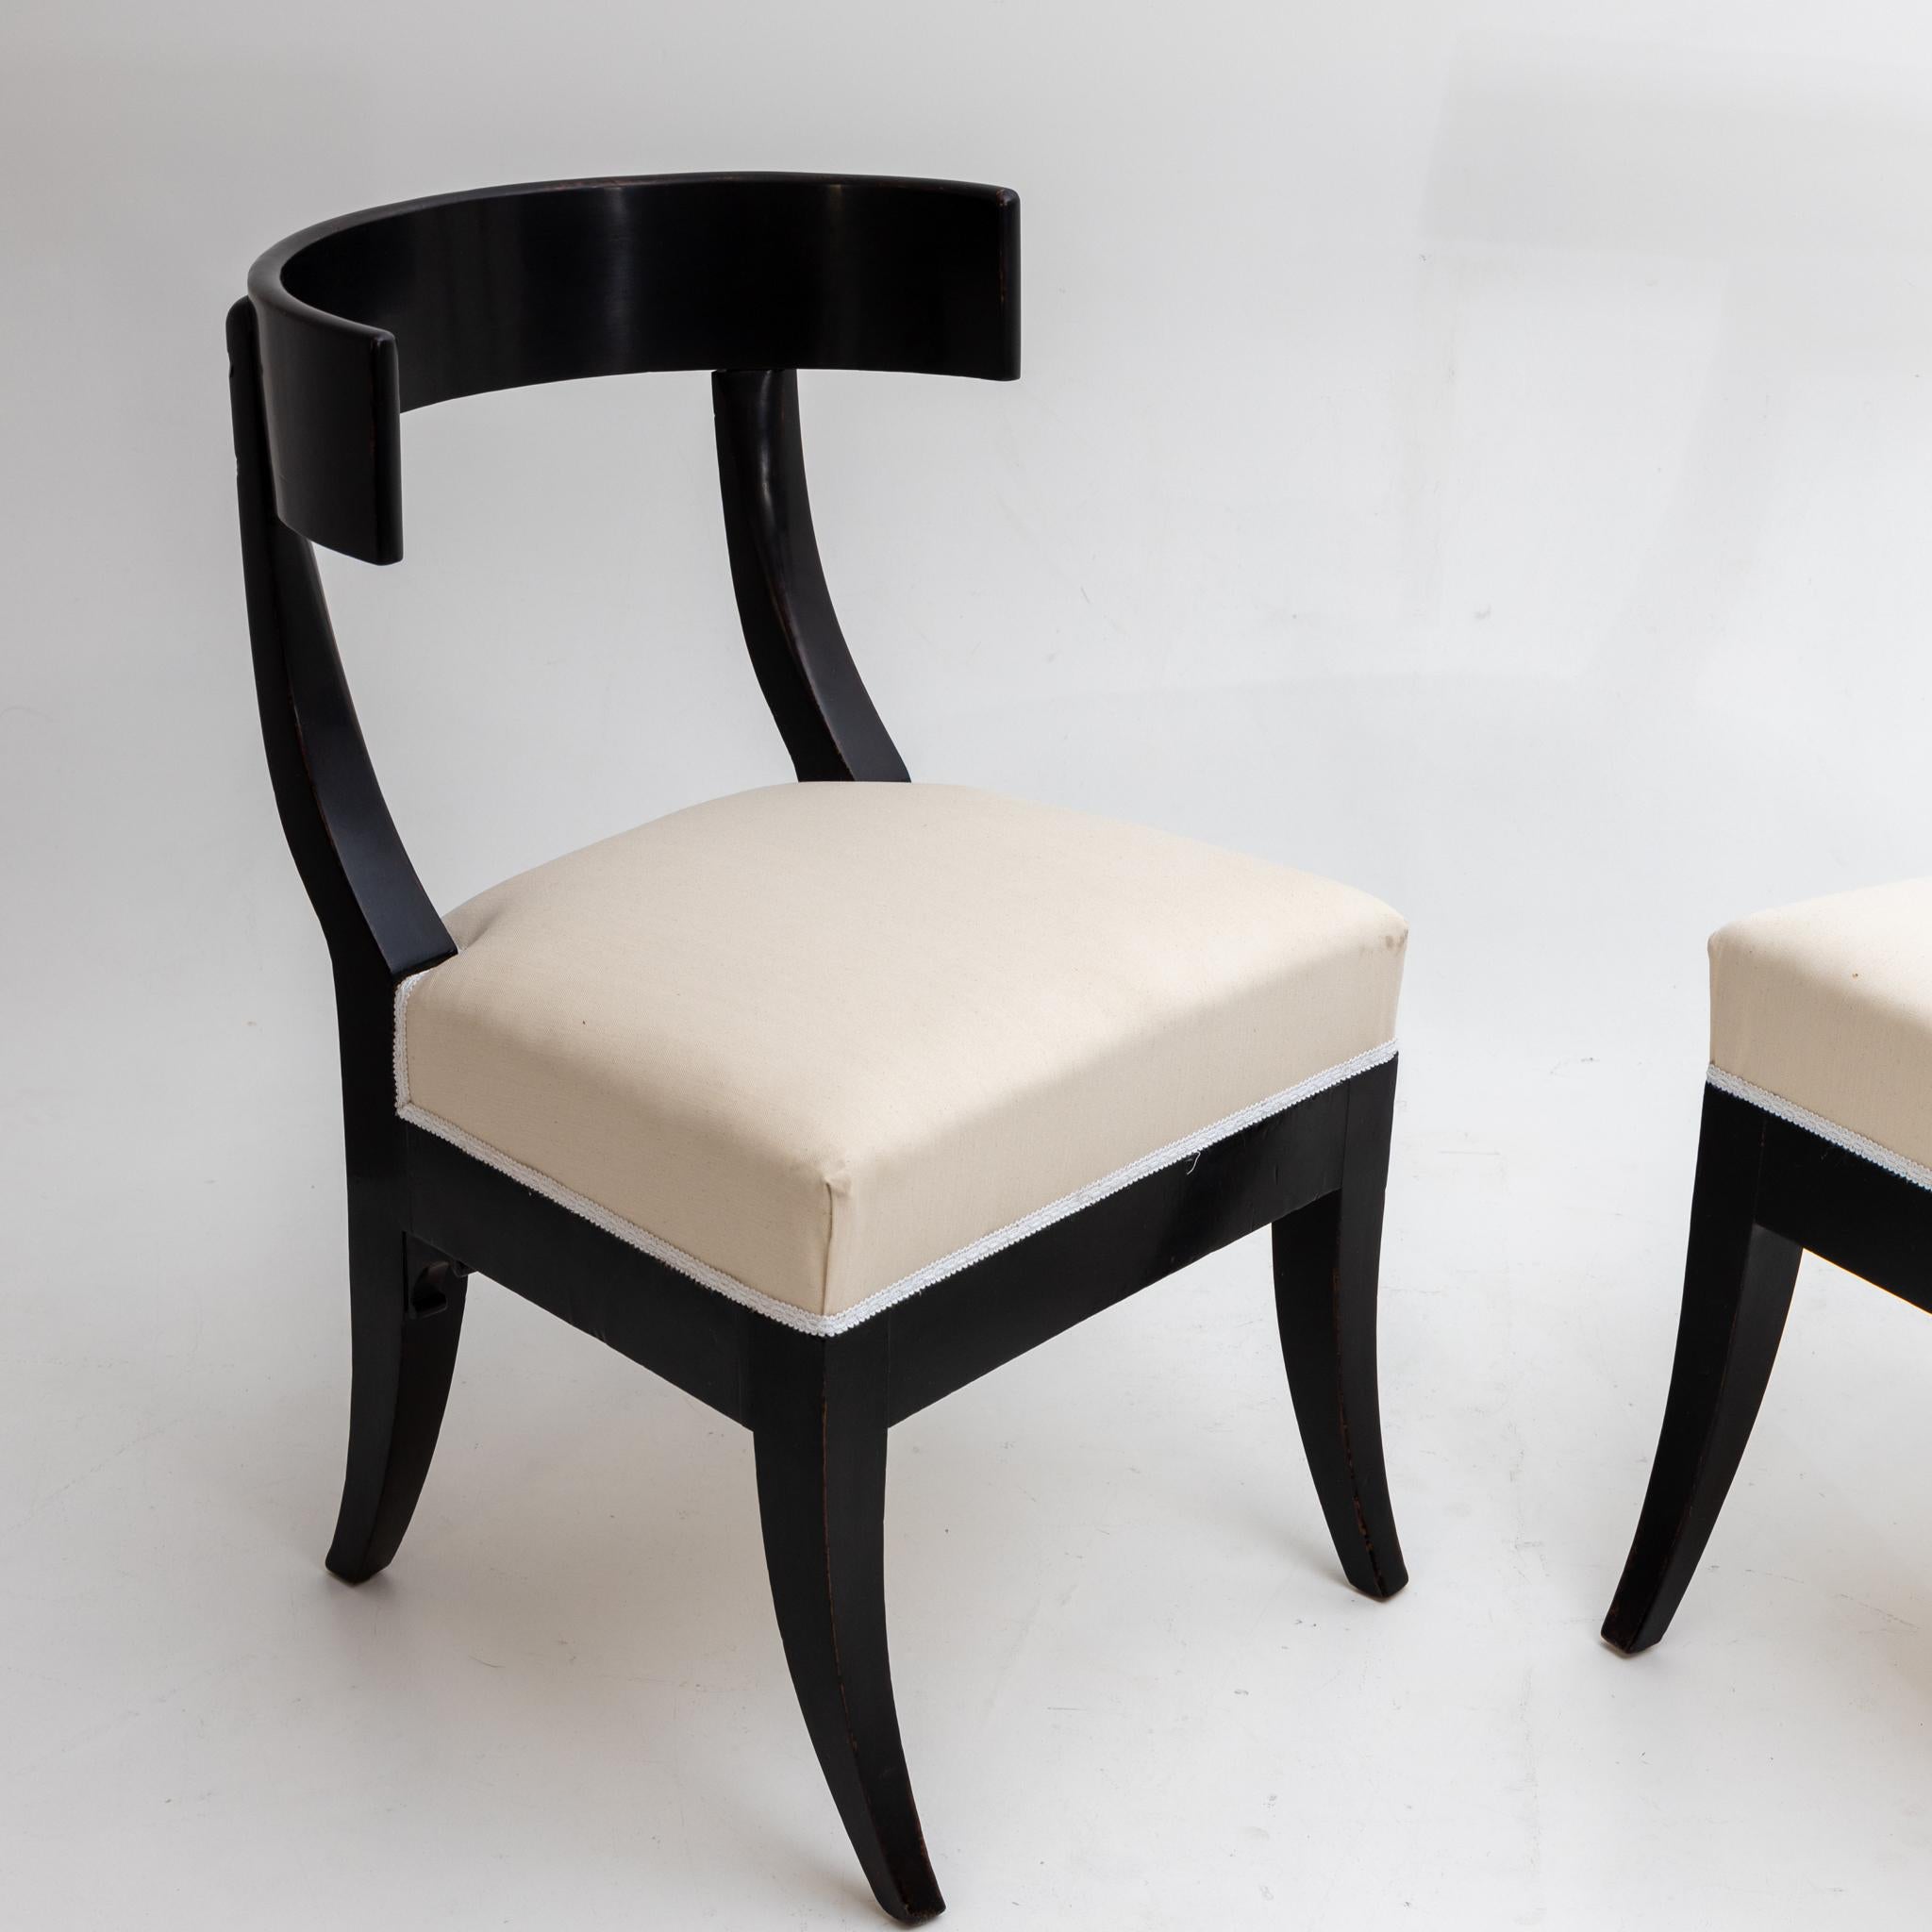 Pair of Klismos Early 19th Century ebonized side chairs. 
Ebonized wood.